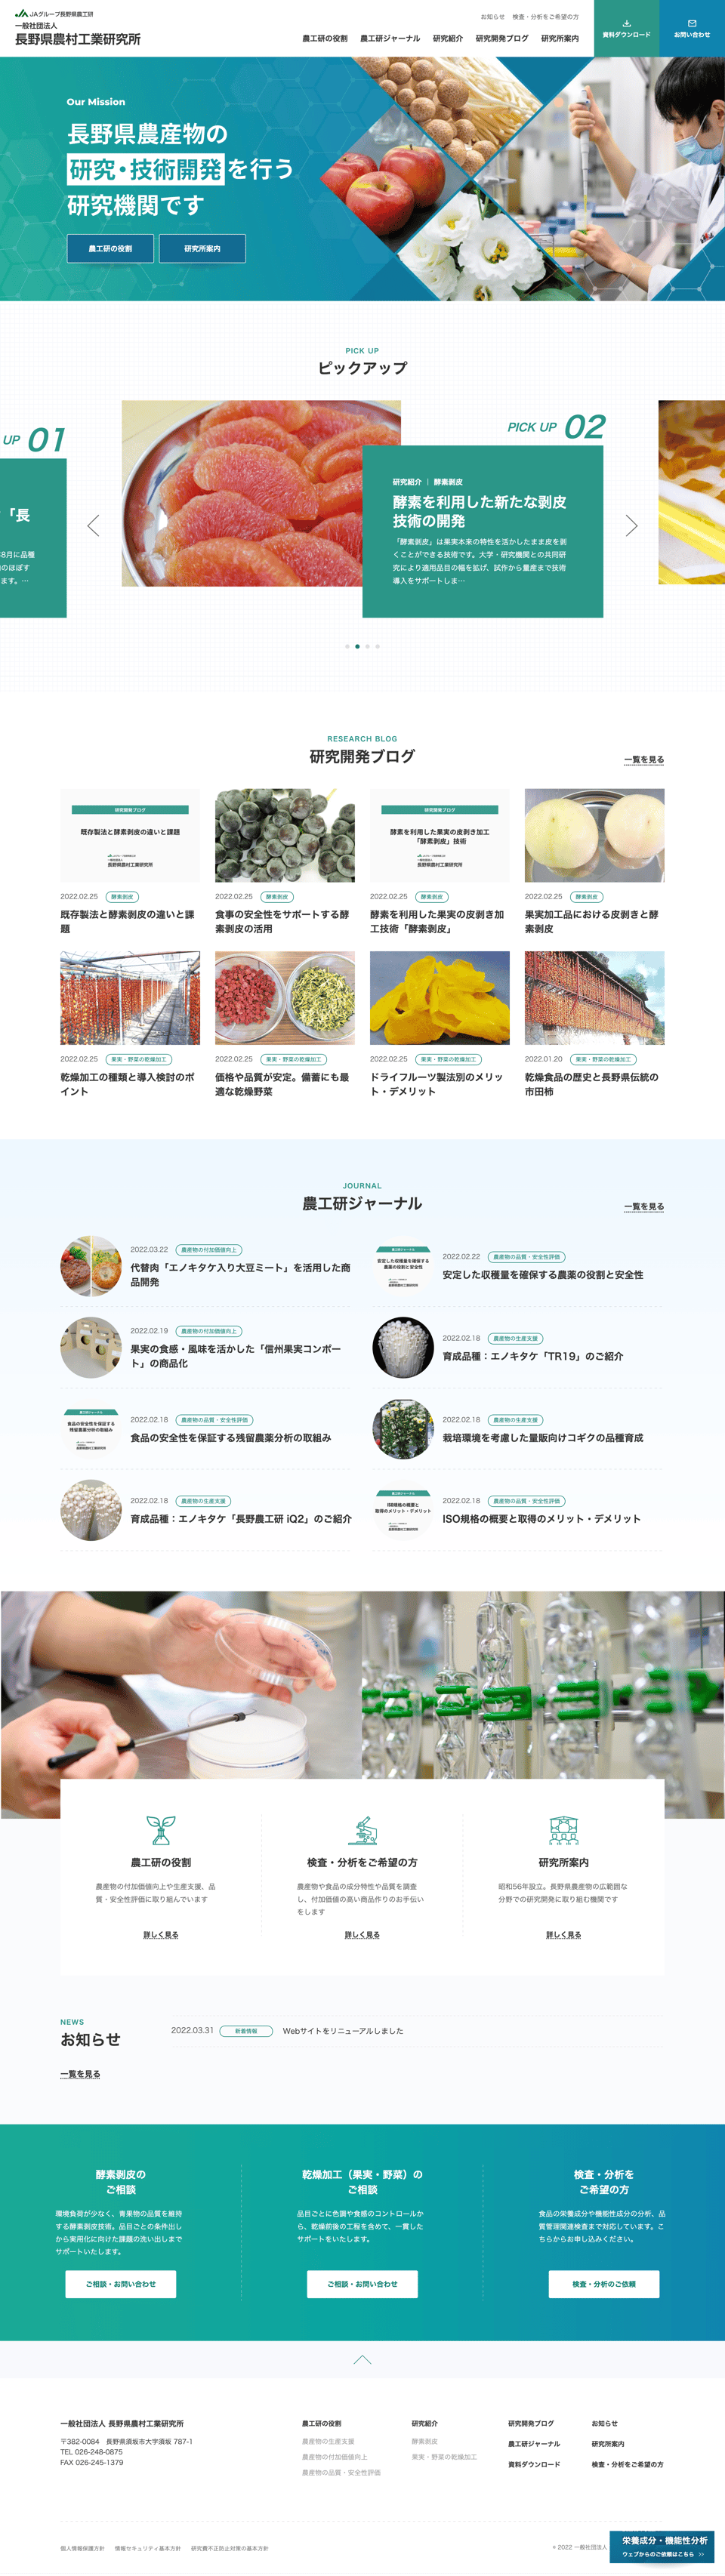 長野県農村工業研究所コーポレートサイト